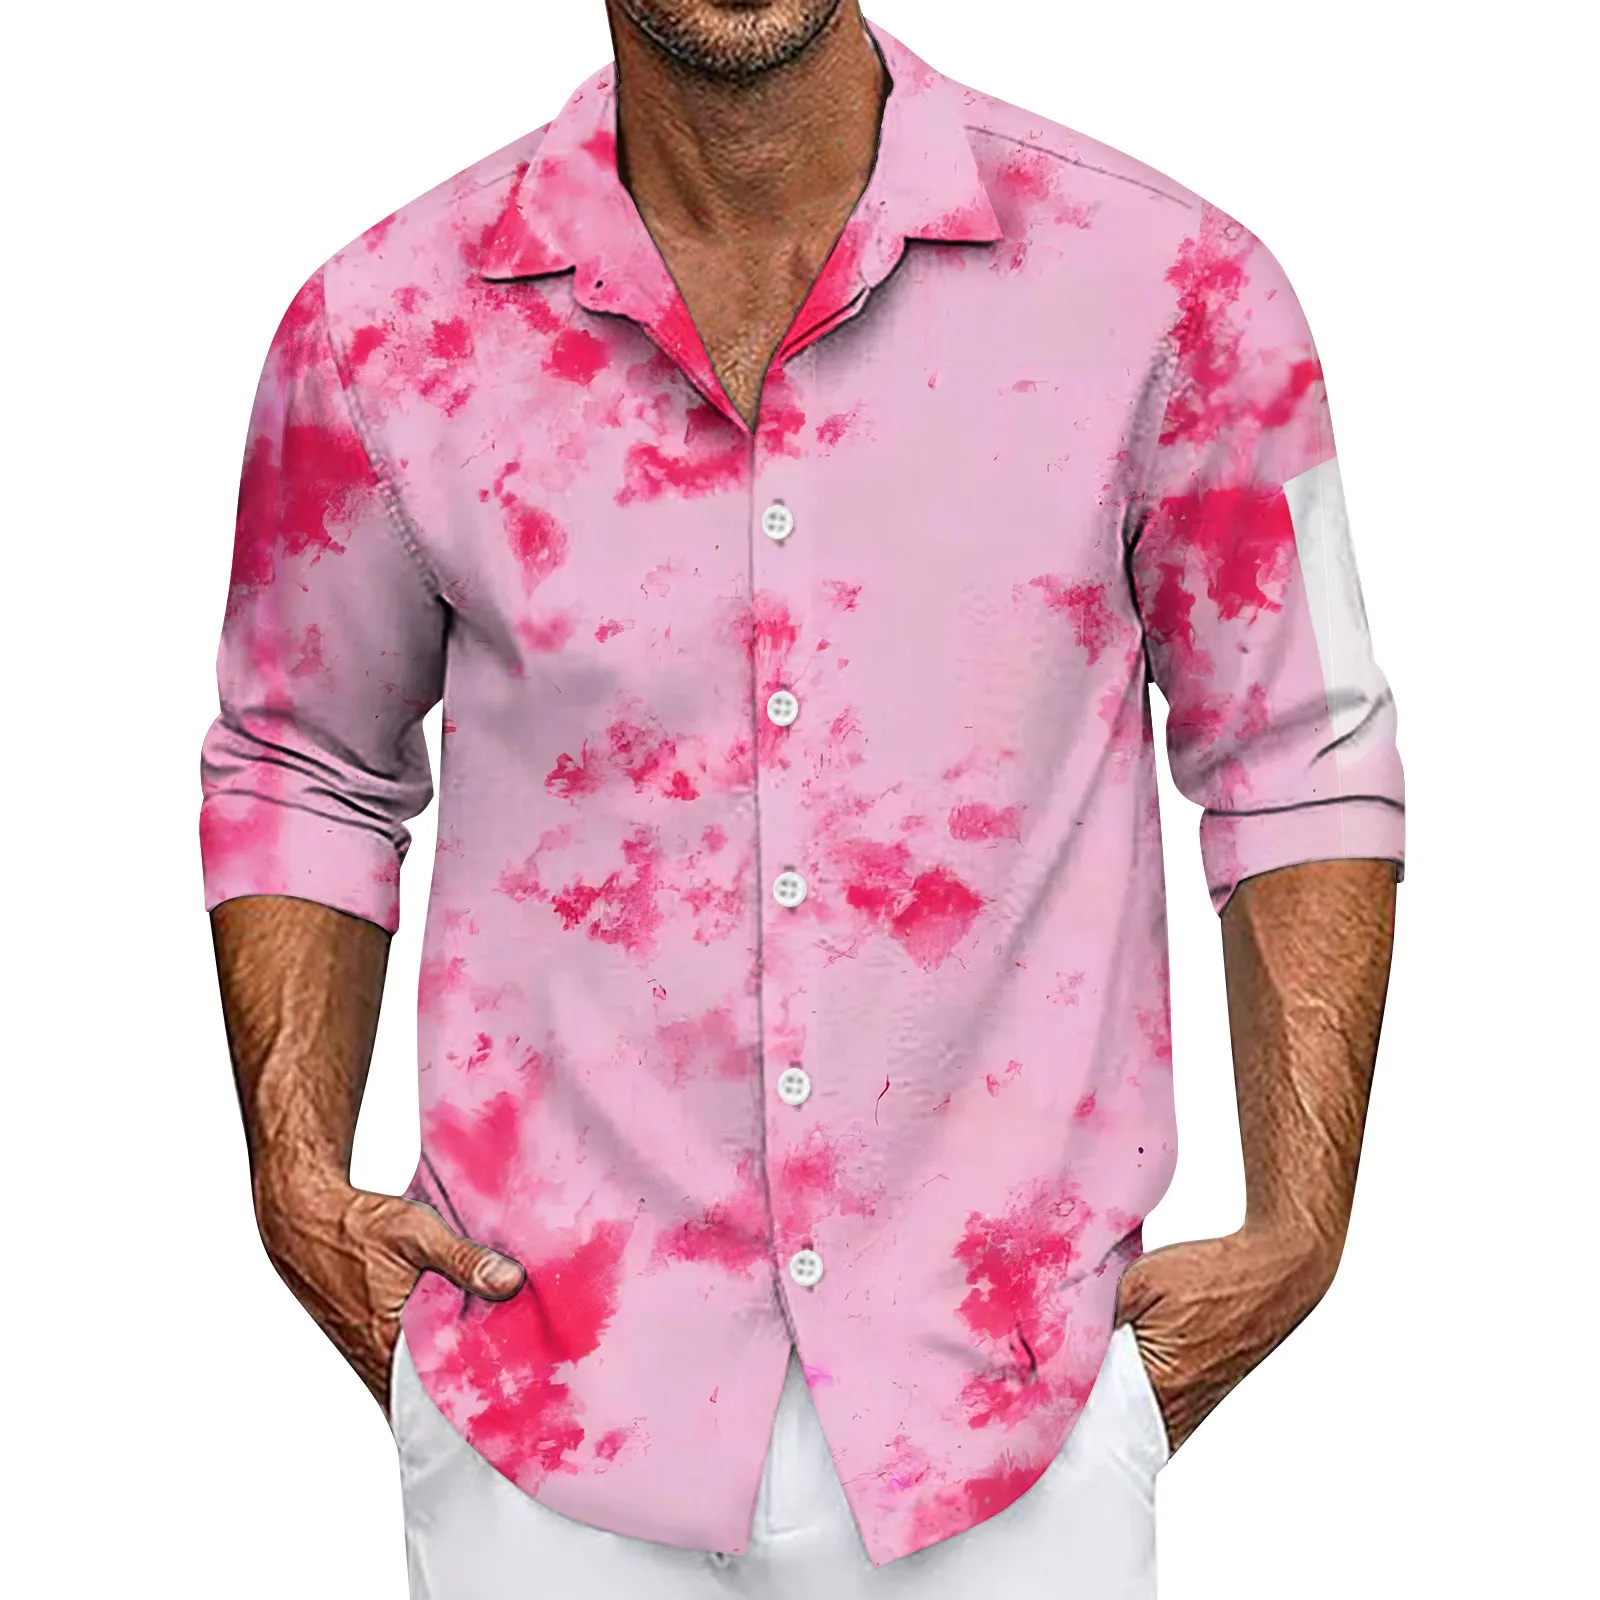 

Мужская рубашка, модные красивые рубашки для мужчин, низкая цена, отложной воротник, длинные рукава, принт, Мужская блузка, спортивные мужские рубашки